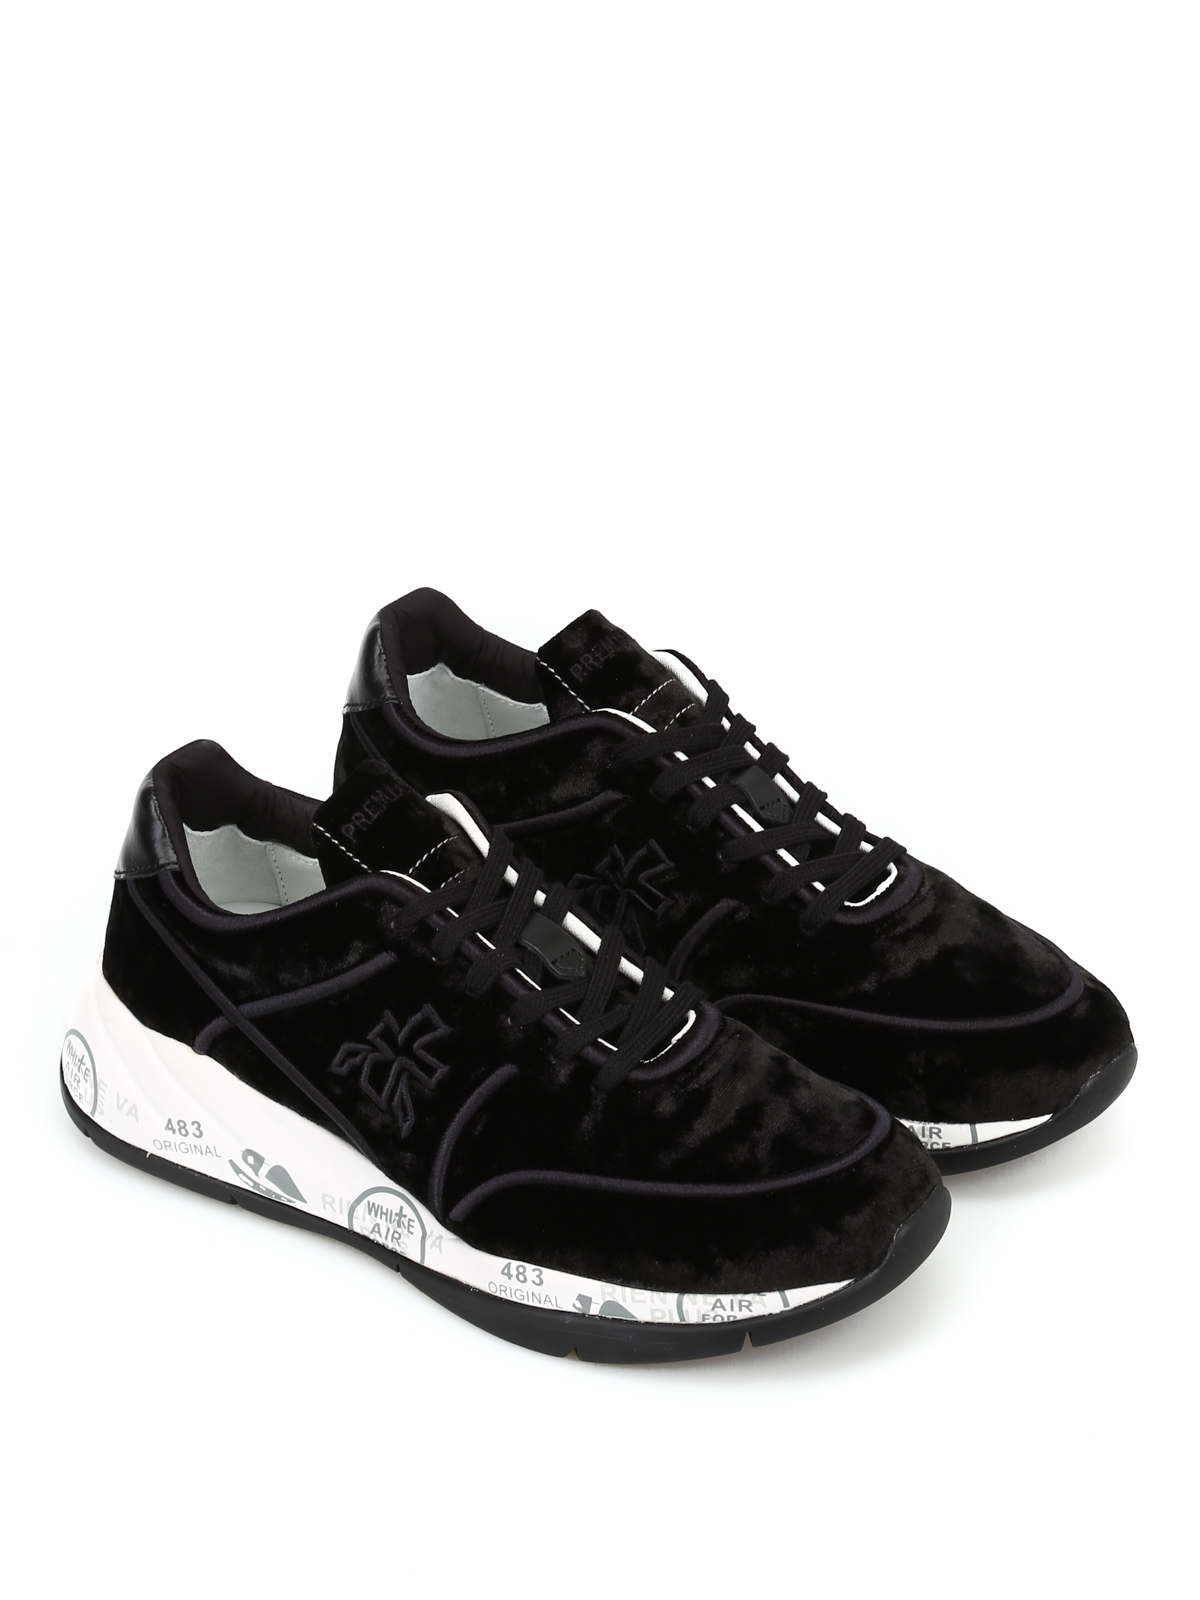 black velvet tennis shoes